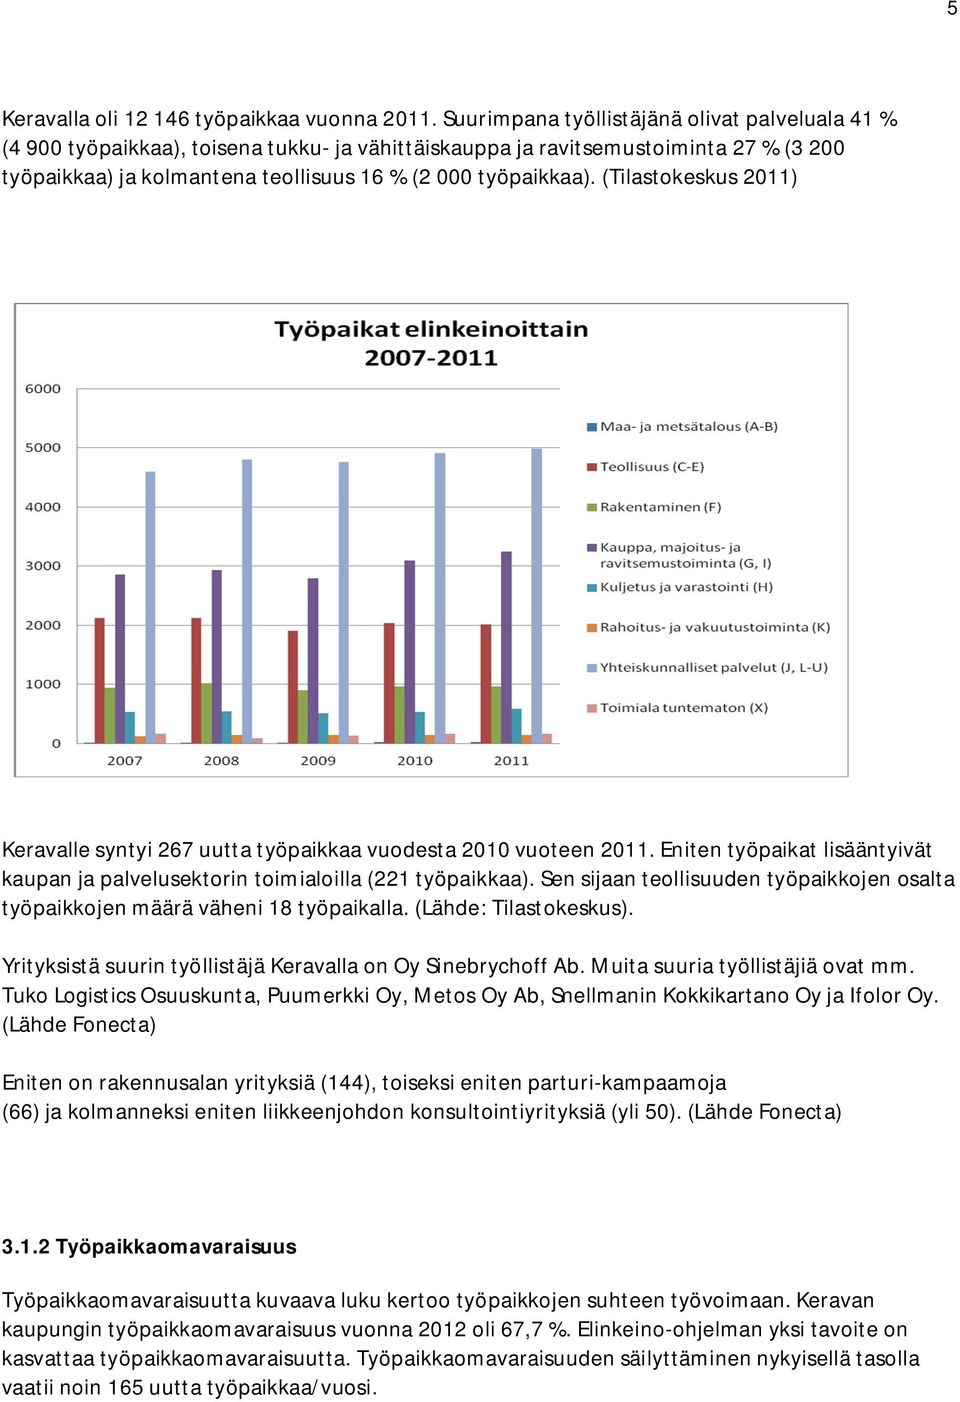 (Tilastokeskus 2011) Keravalle syntyi 267 uutta työpaikkaa vuodesta 2010 vuoteen 2011. Eniten työpaikat lisääntyivät kaupan ja palvelusektorin toimialoilla (221 työpaikkaa).